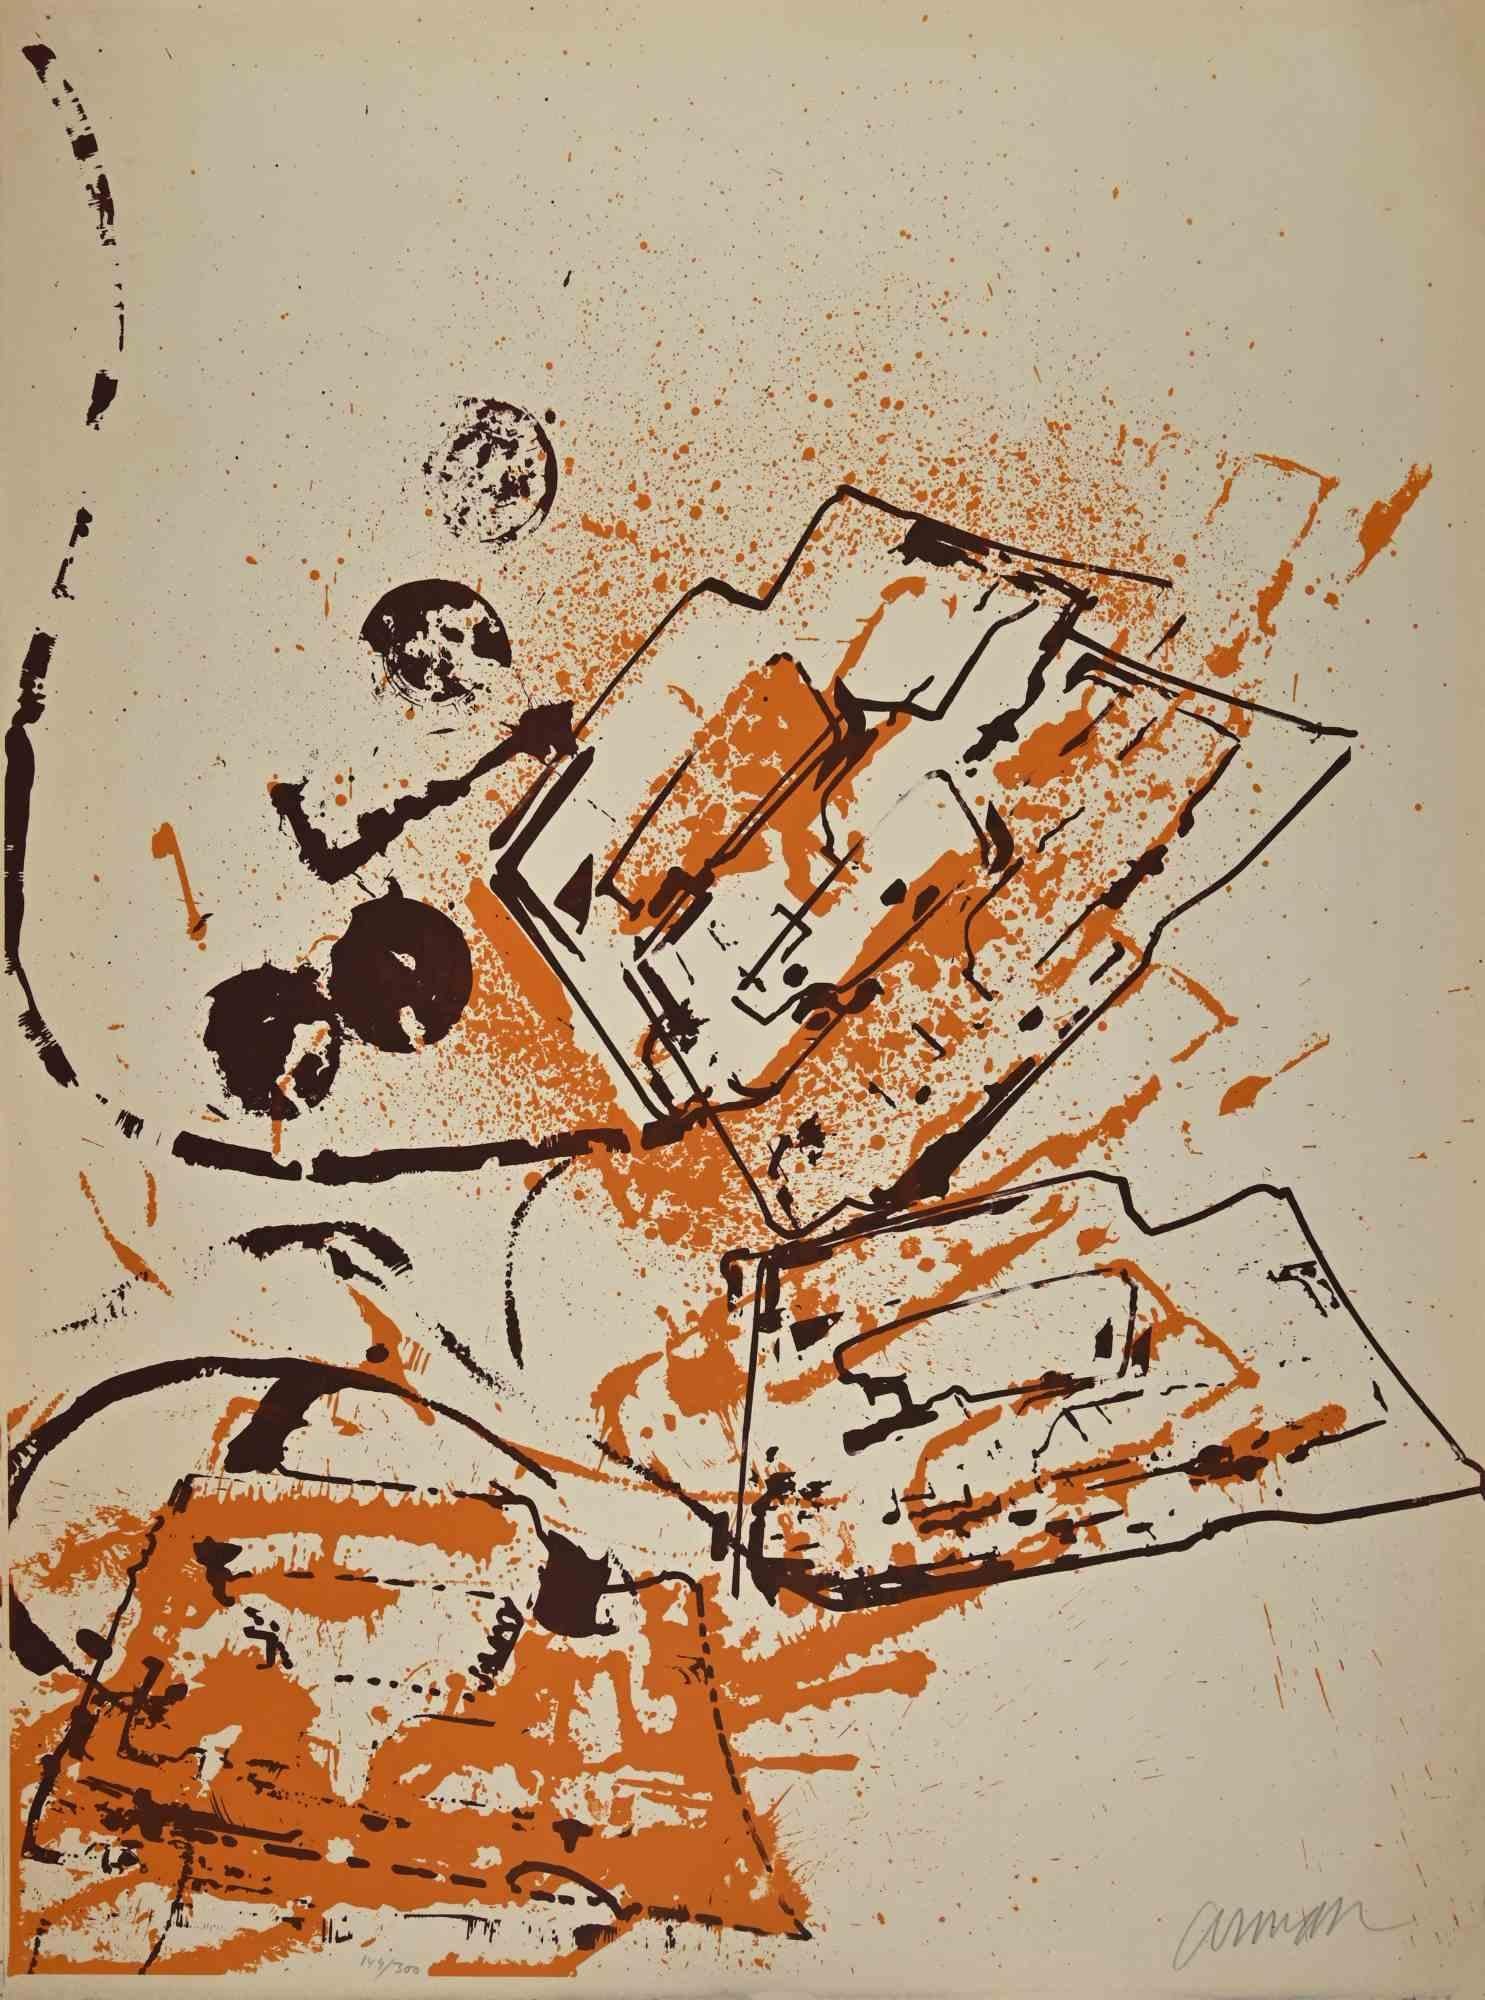 Composition abstraite est une œuvre d'art contemporain réalisée par l'artiste français Arman (Armand Pierre Fernandez) dans les années 1980.

Lithographie en couleurs mélangées sur papier. Signé à la main dans la marge inférieure droite. Numéroté